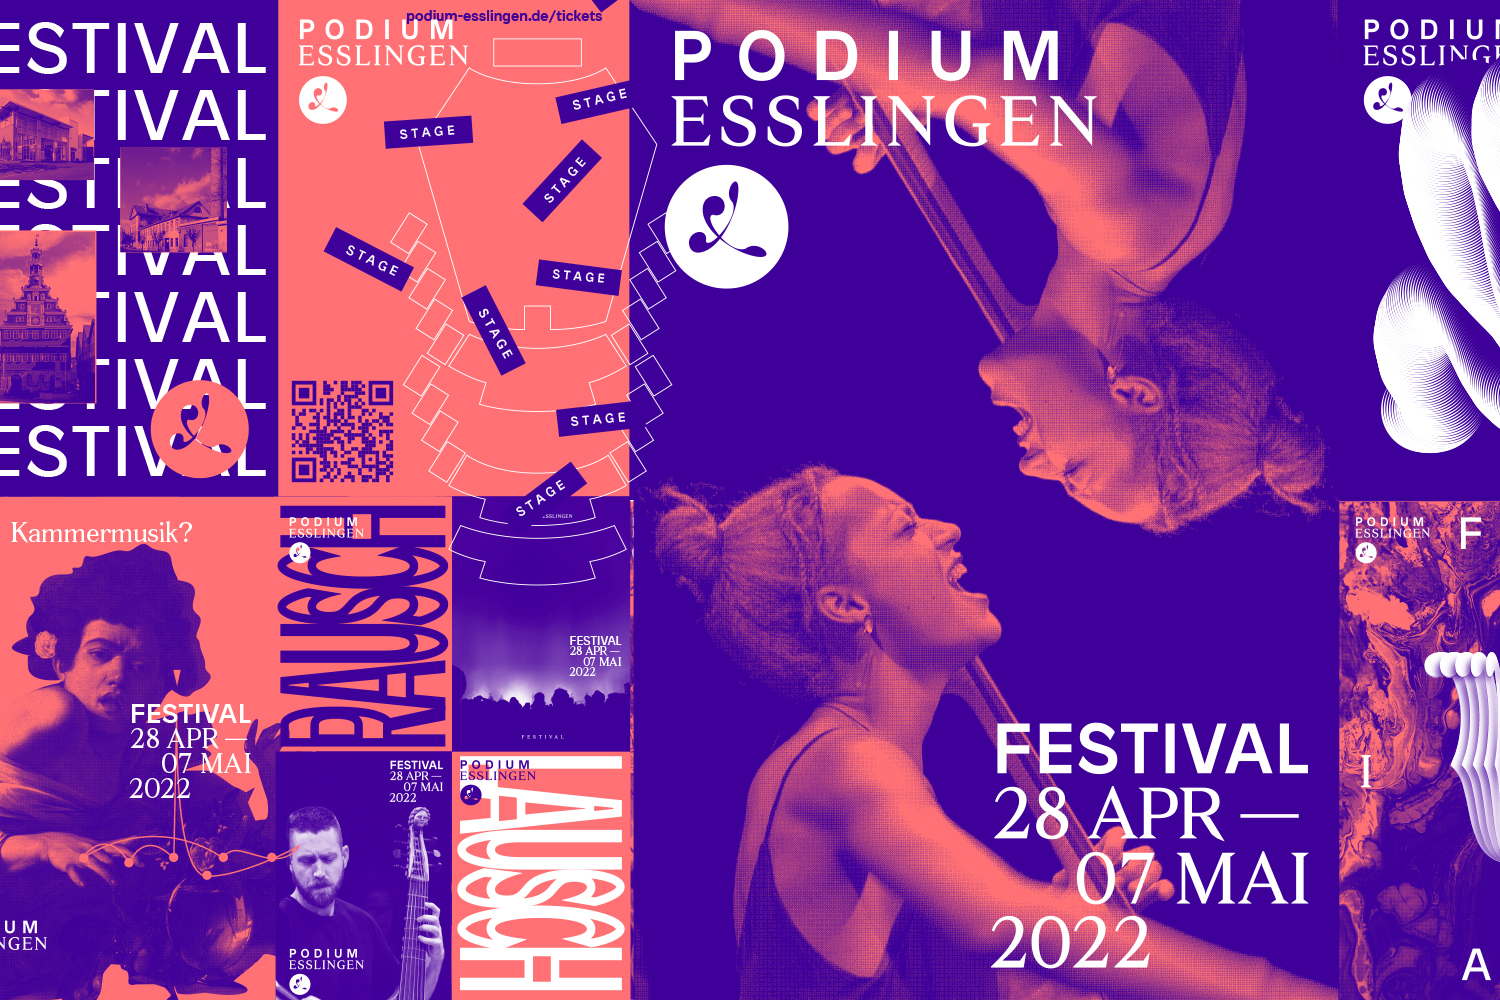 Keyvisual PODIUM Festival 2022